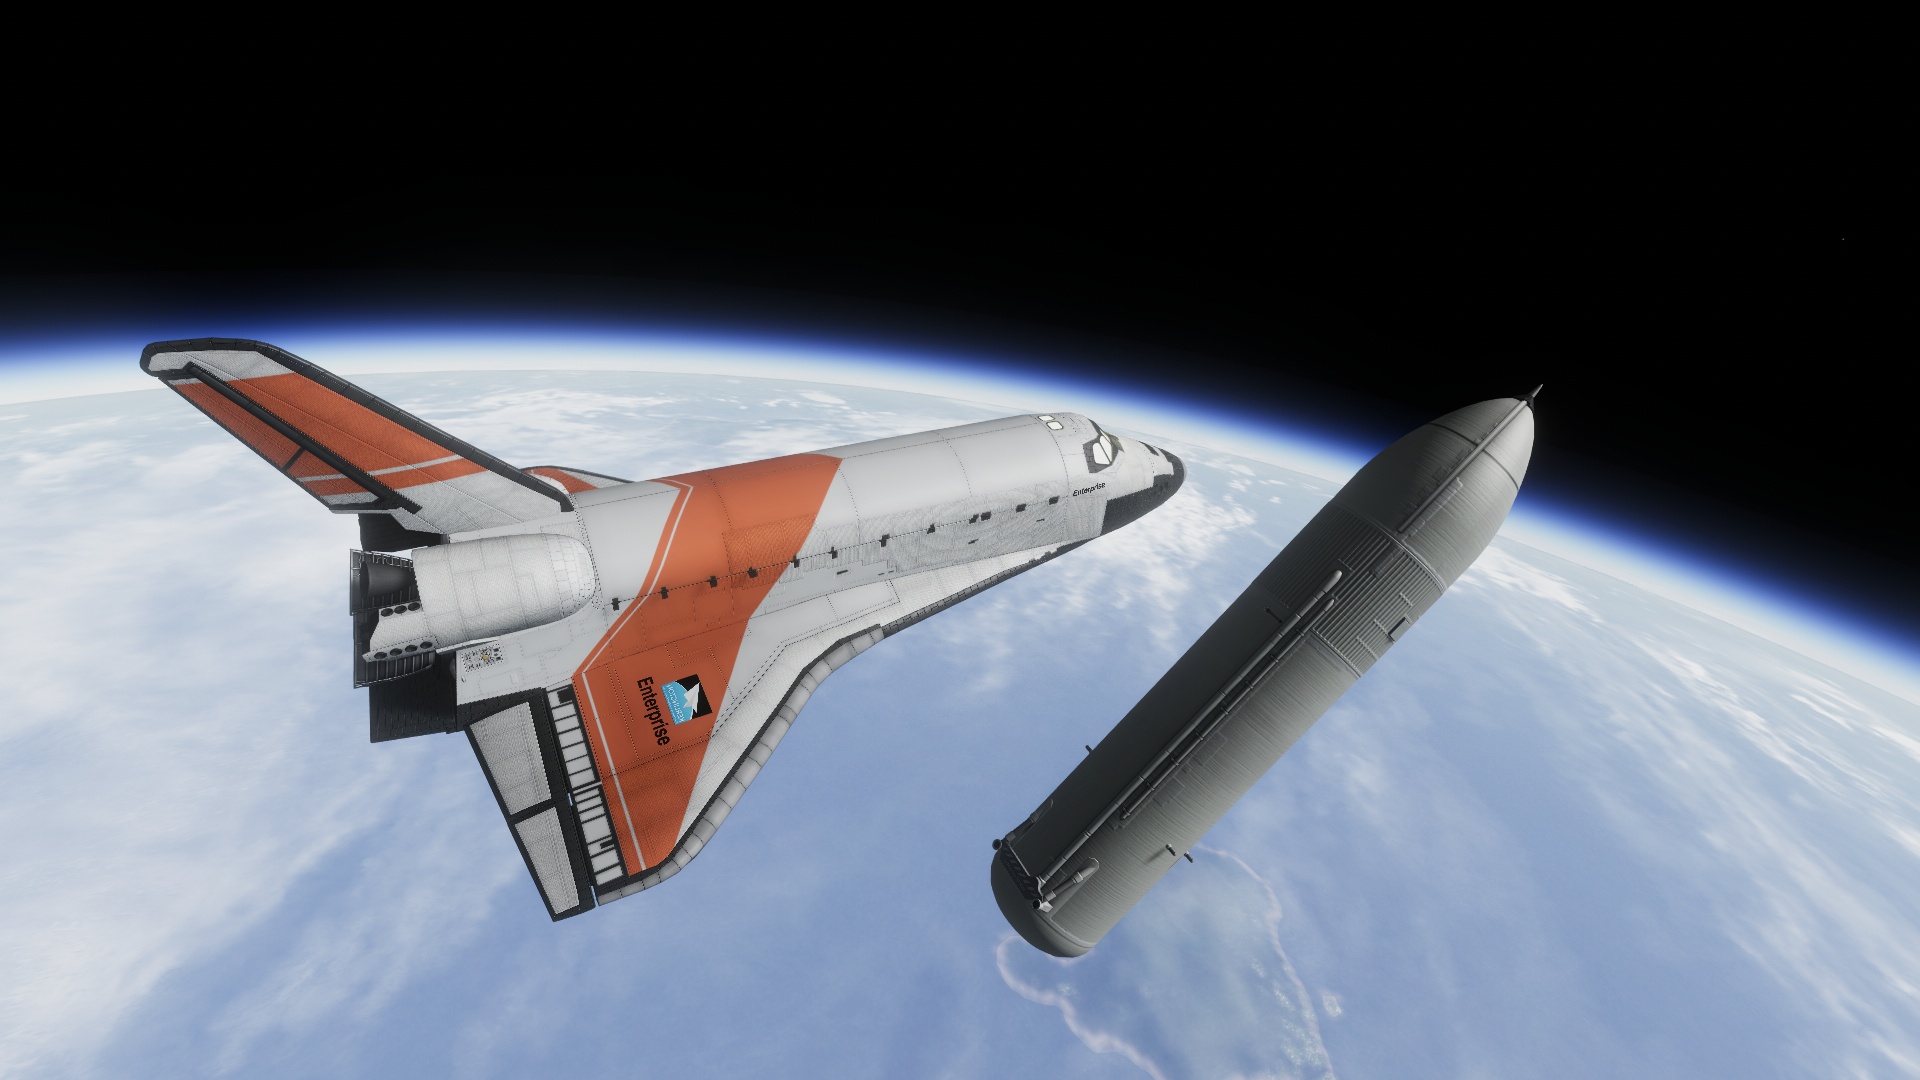 shuttle orbiter construction kit